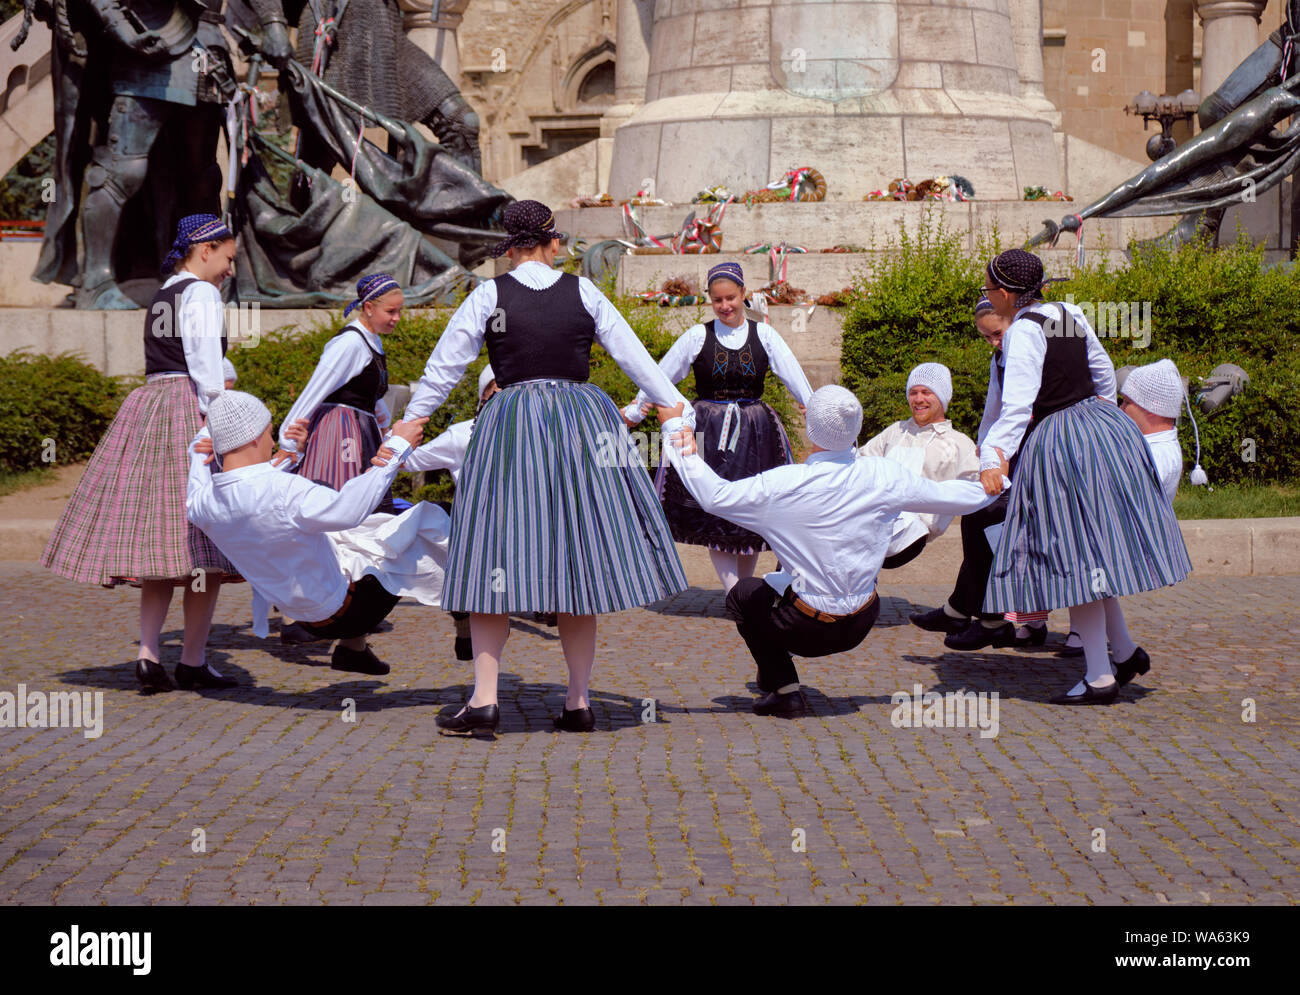 Troupe de danse traditionnelle hongroise dans les coutumes folkloriques avec une performance publique square. La danse en cercle avec man crunching danse. Banque D'Images